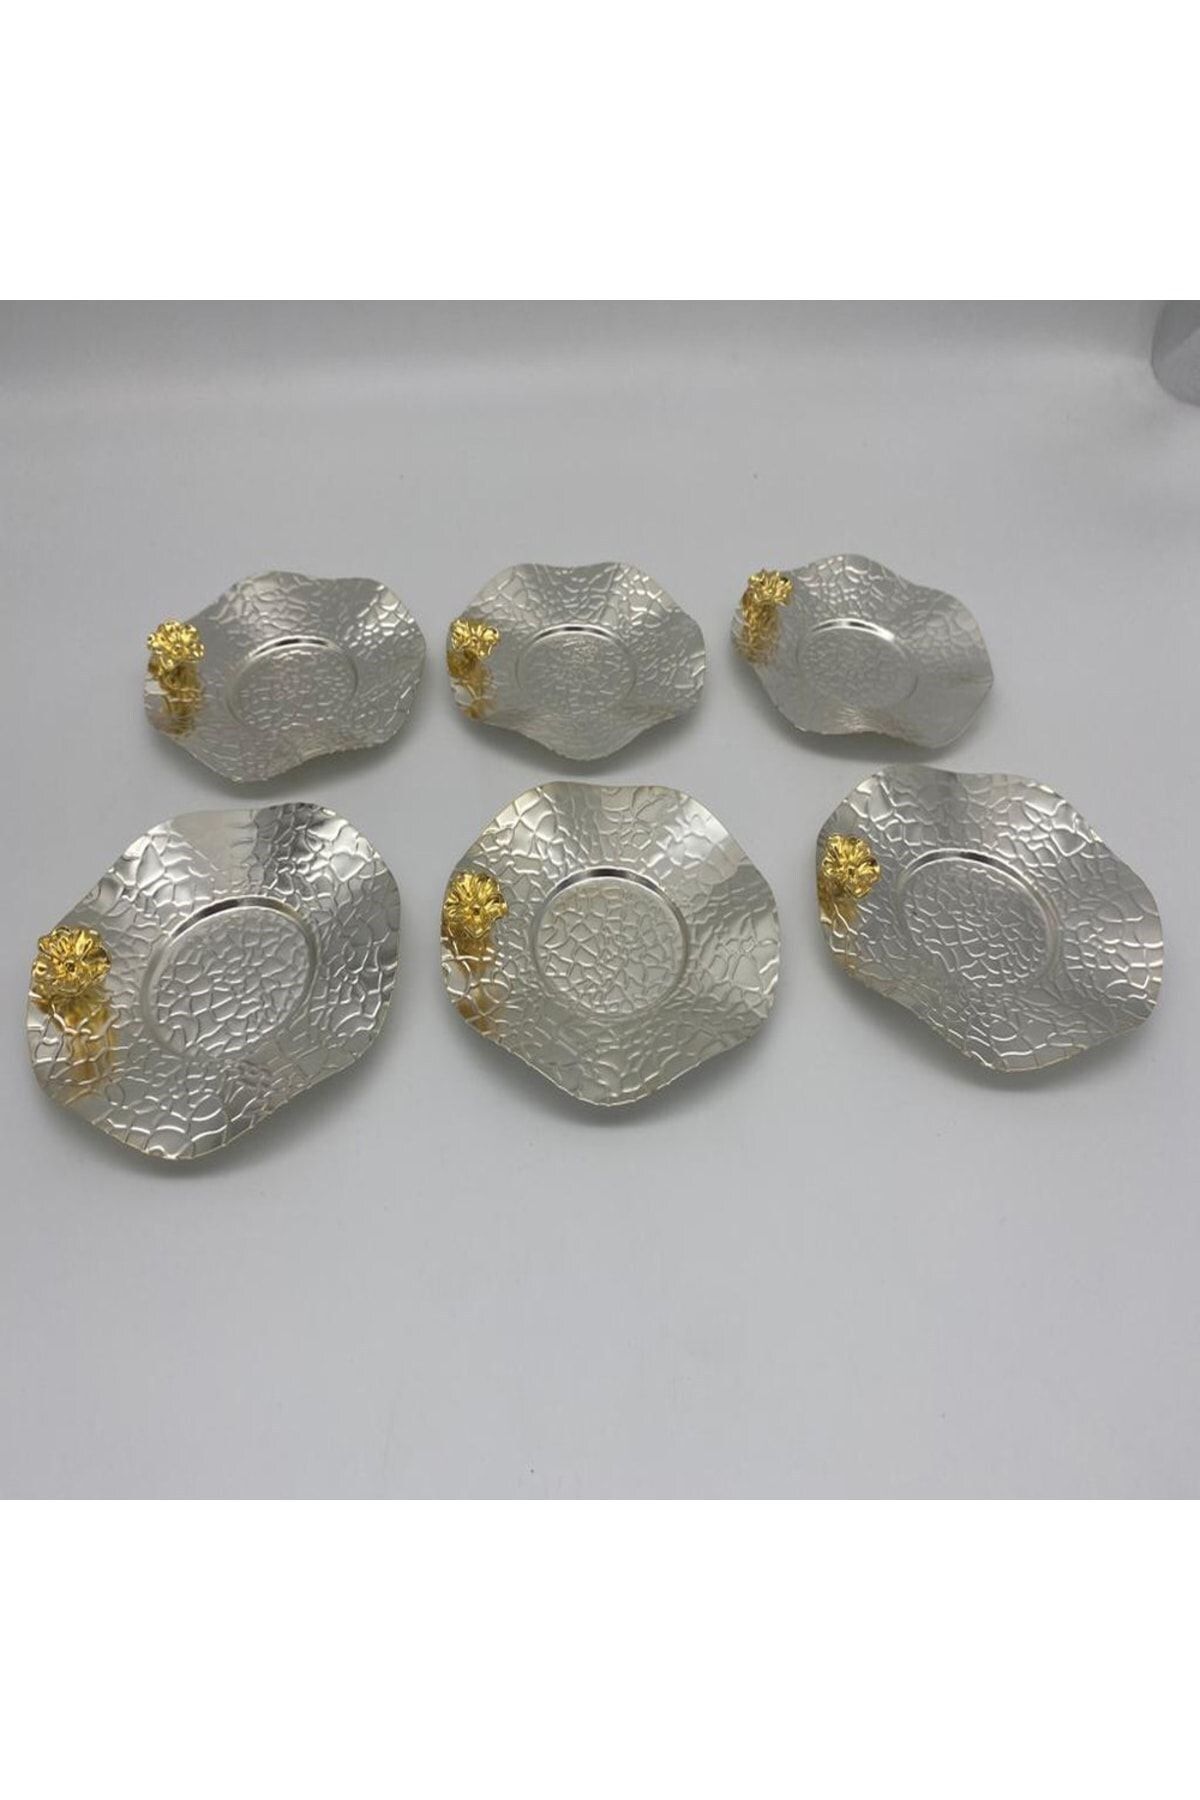 Fiyakalı Ürünler Atölyesi Dalgalı Model Çay Tabağı Çay Kahve Sunum Gümüş Serisi Çiçekli Aksesuar Altın Renkli Bardak Altlığı